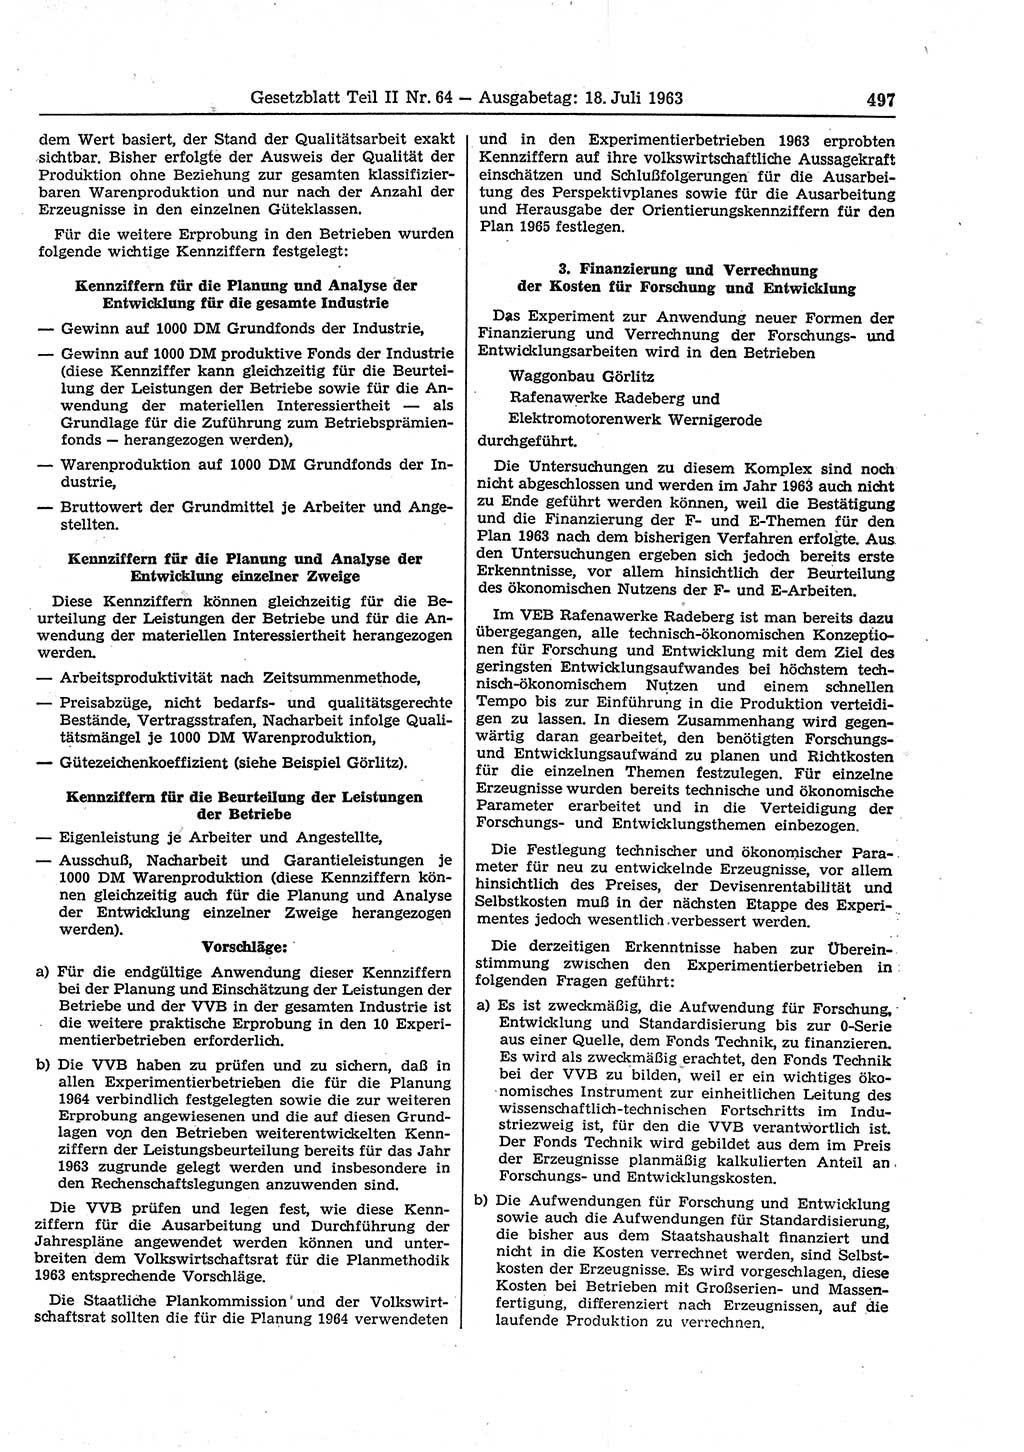 Gesetzblatt (GBl.) der Deutschen Demokratischen Republik (DDR) Teil ⅠⅠ 1963, Seite 497 (GBl. DDR ⅠⅠ 1963, S. 497)